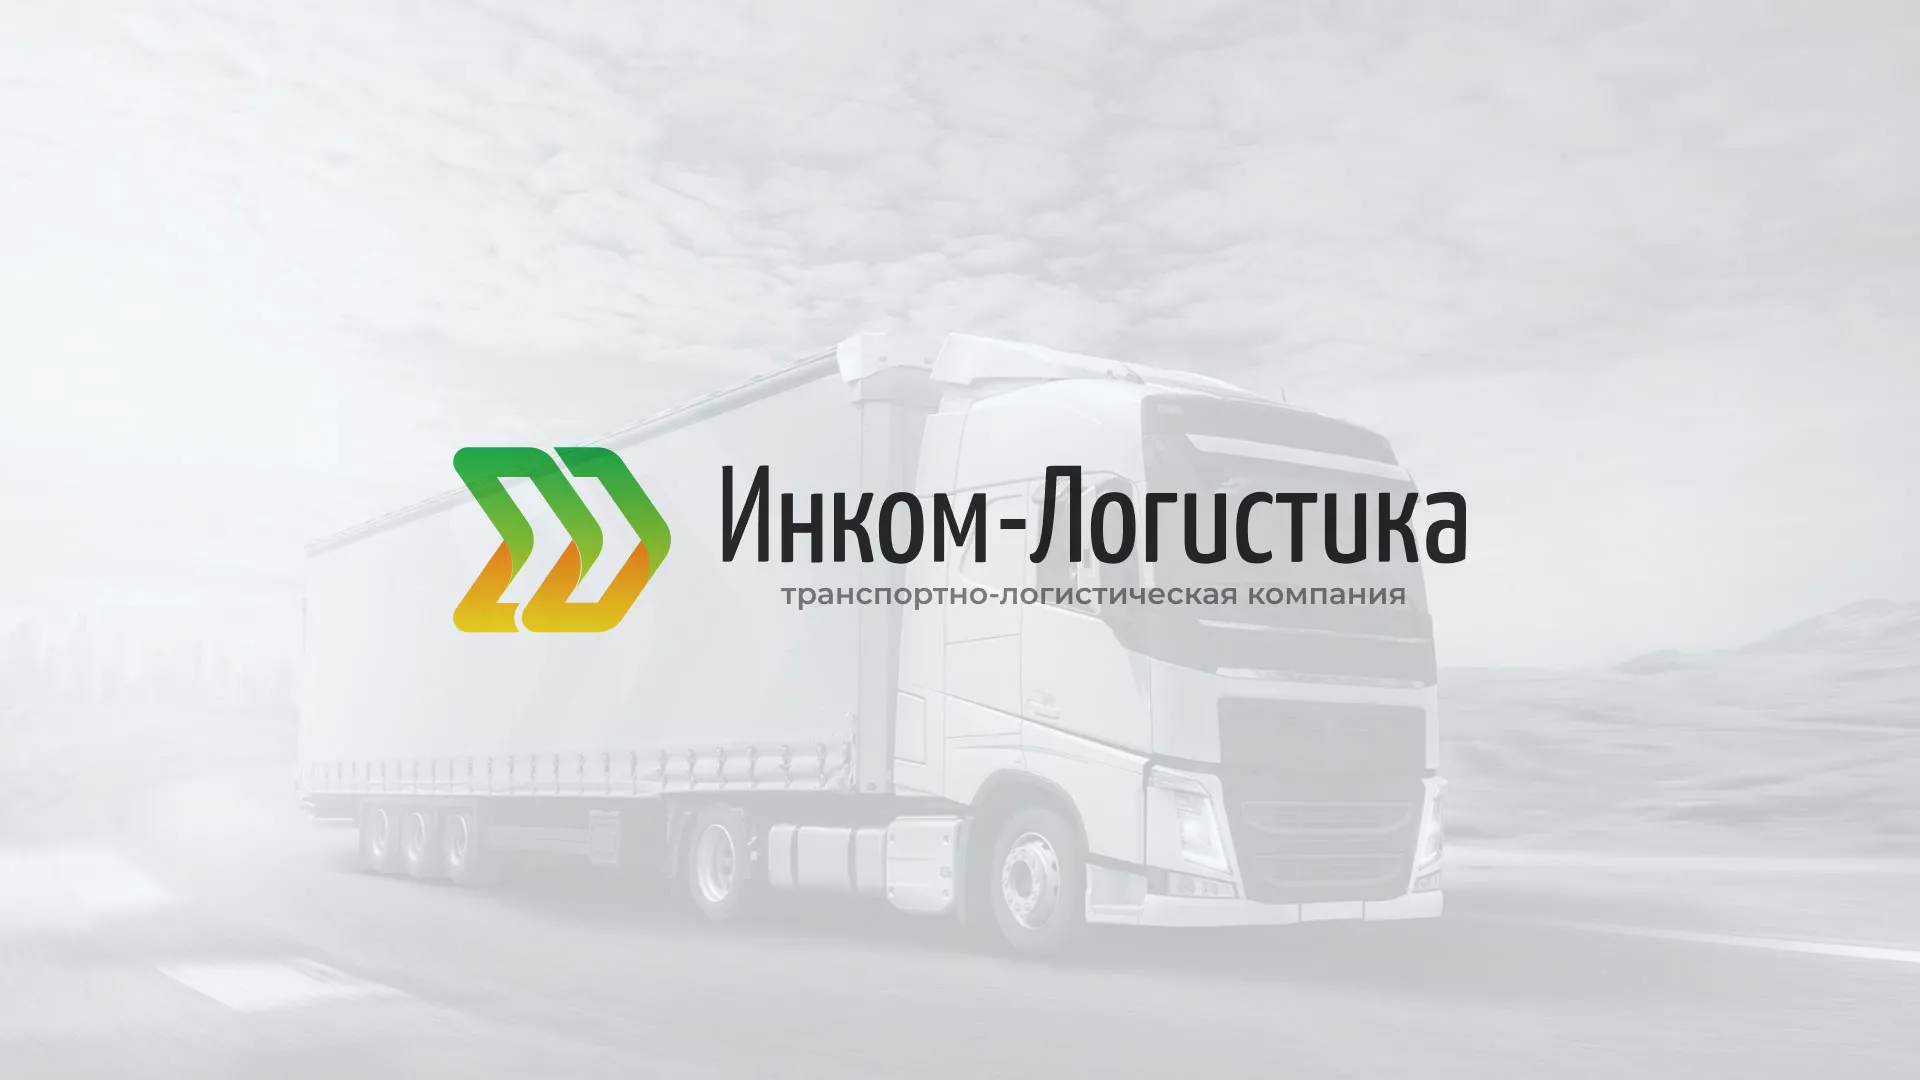 Разработка логотипа и сайта компании «Инком-Логистика» в Красногорске